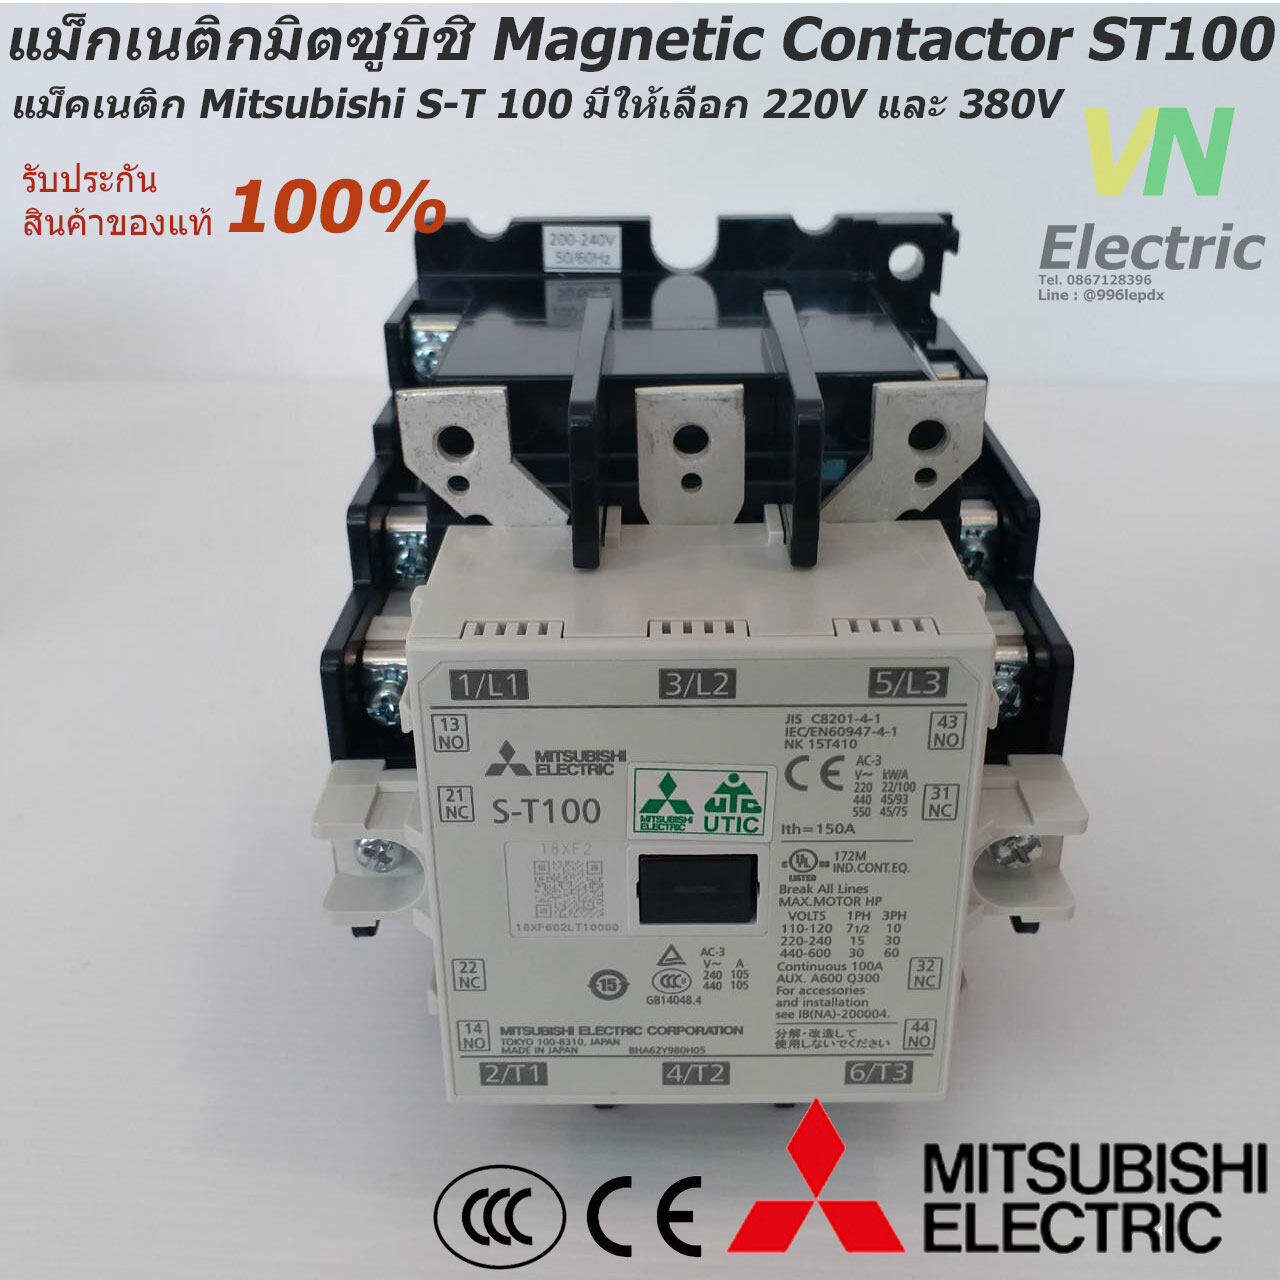 แม็กเนติกมิตซูบิชิ MITSUBISHI Magnetic Contactor S-T 100 220V-380V แม็คเนติก  ตัวเลือก คอยล์ 220 V.